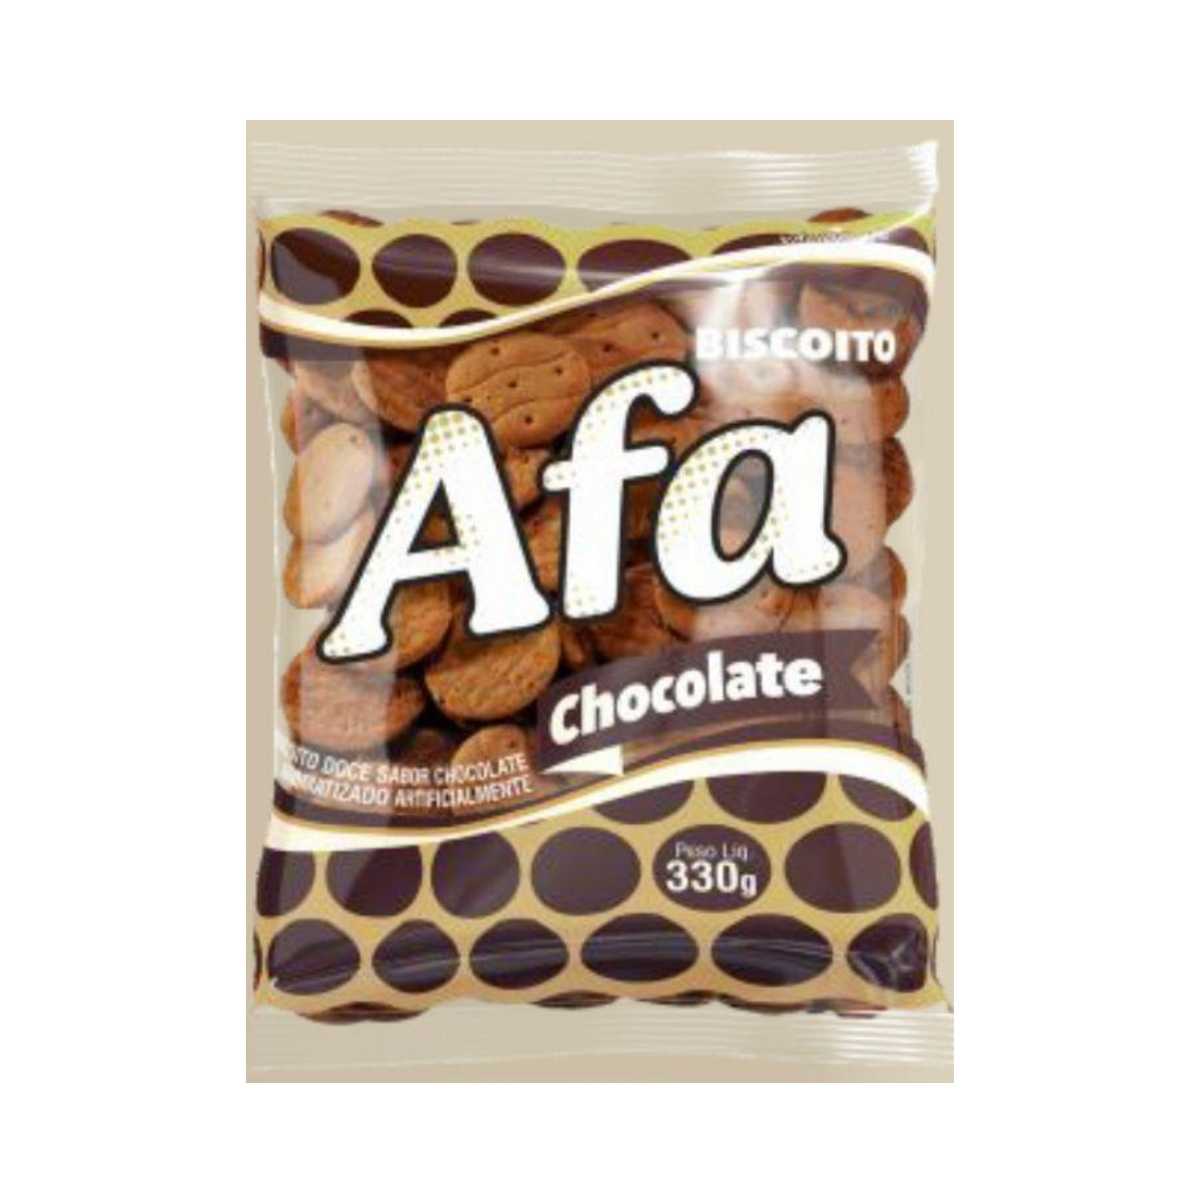 biscoito-afa-chocolate-330g-1.jpg